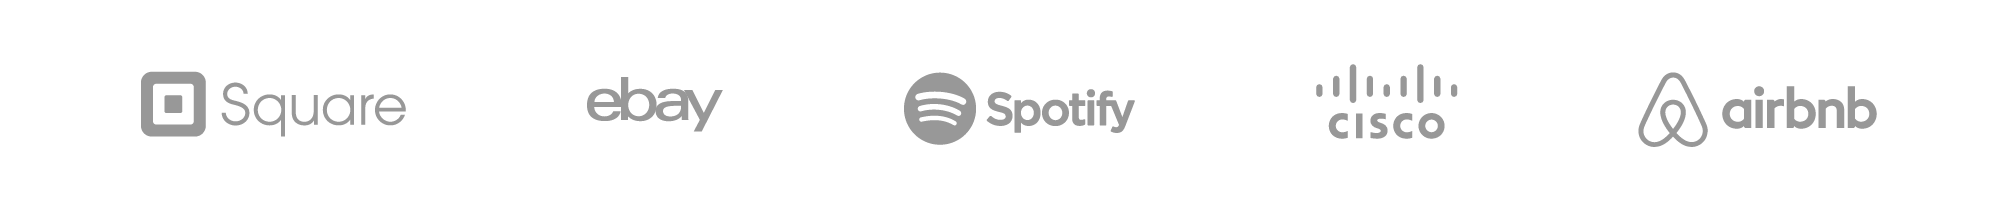 Logotipo do Square, eBay, Spotify, Cisco e Airbnb